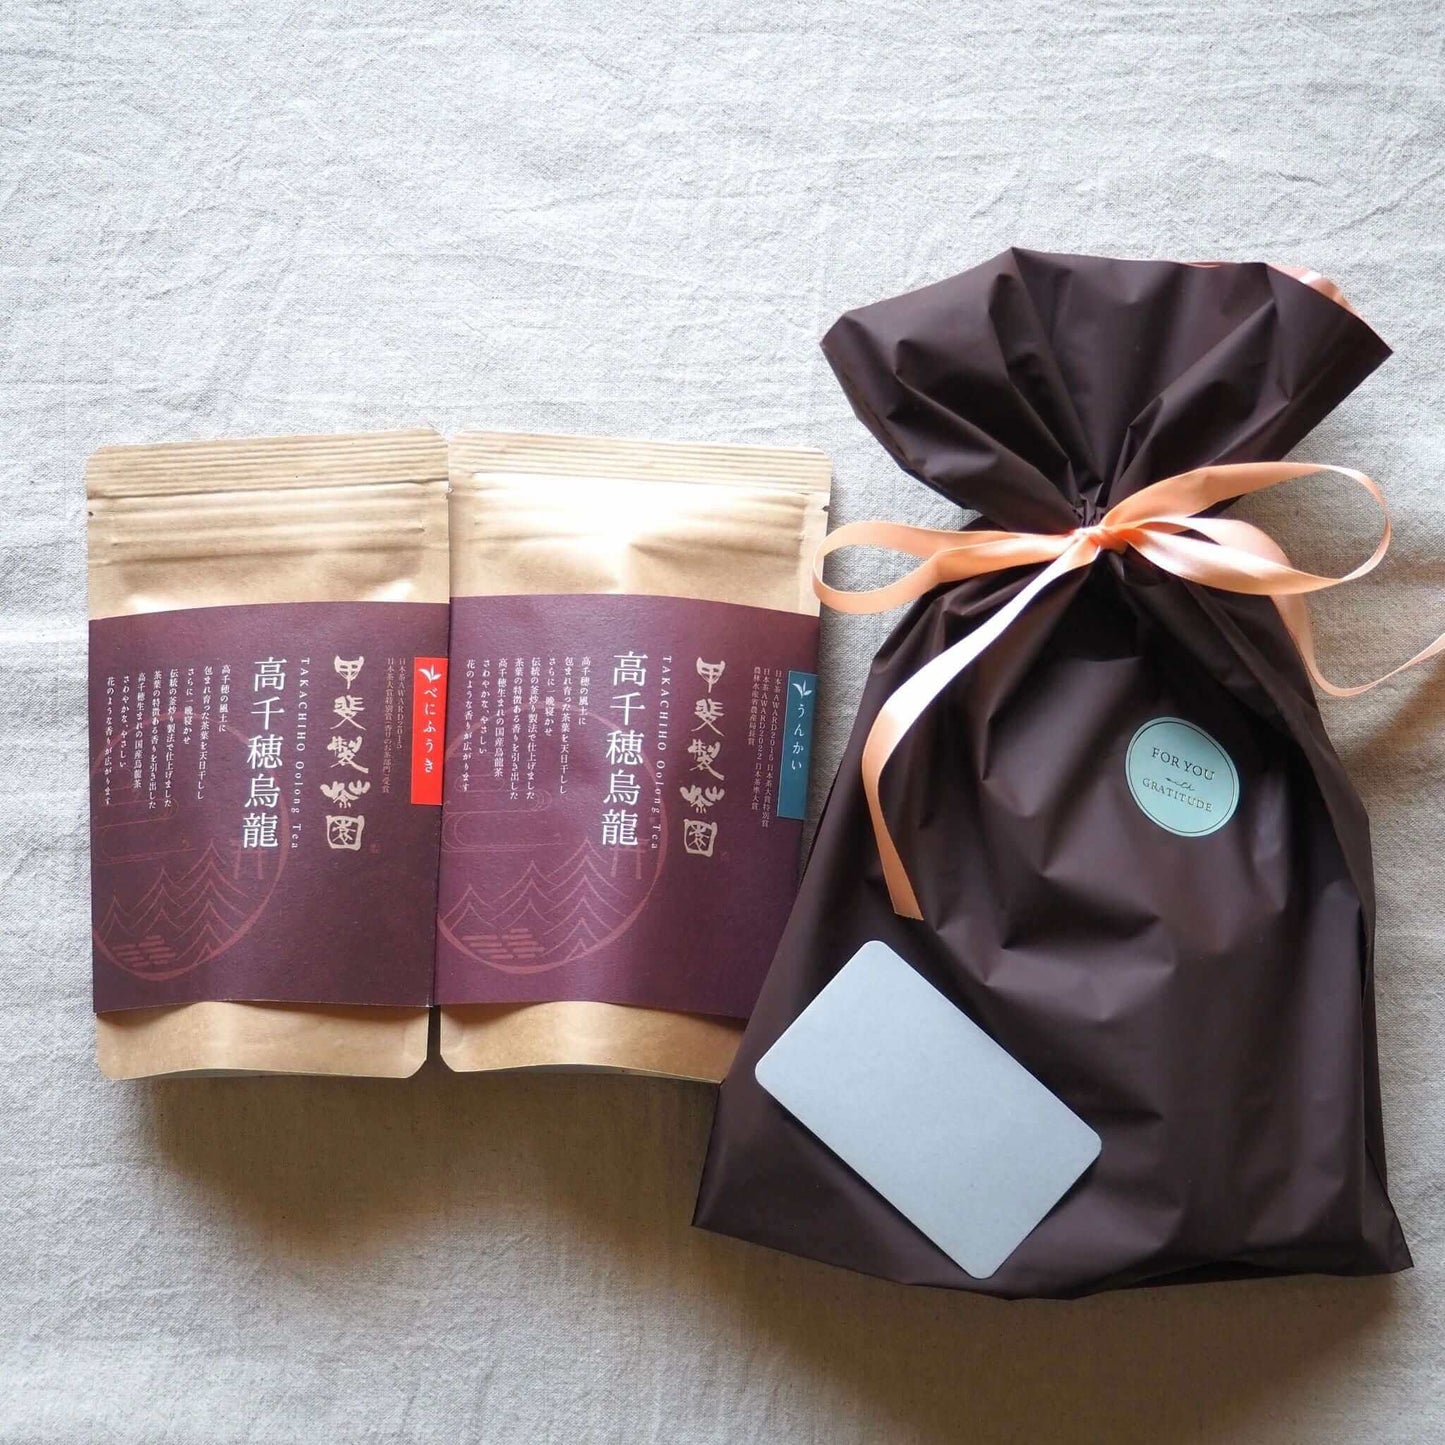 Tea gift "No, it's Miyazaki tea." Japanese oolong tea set